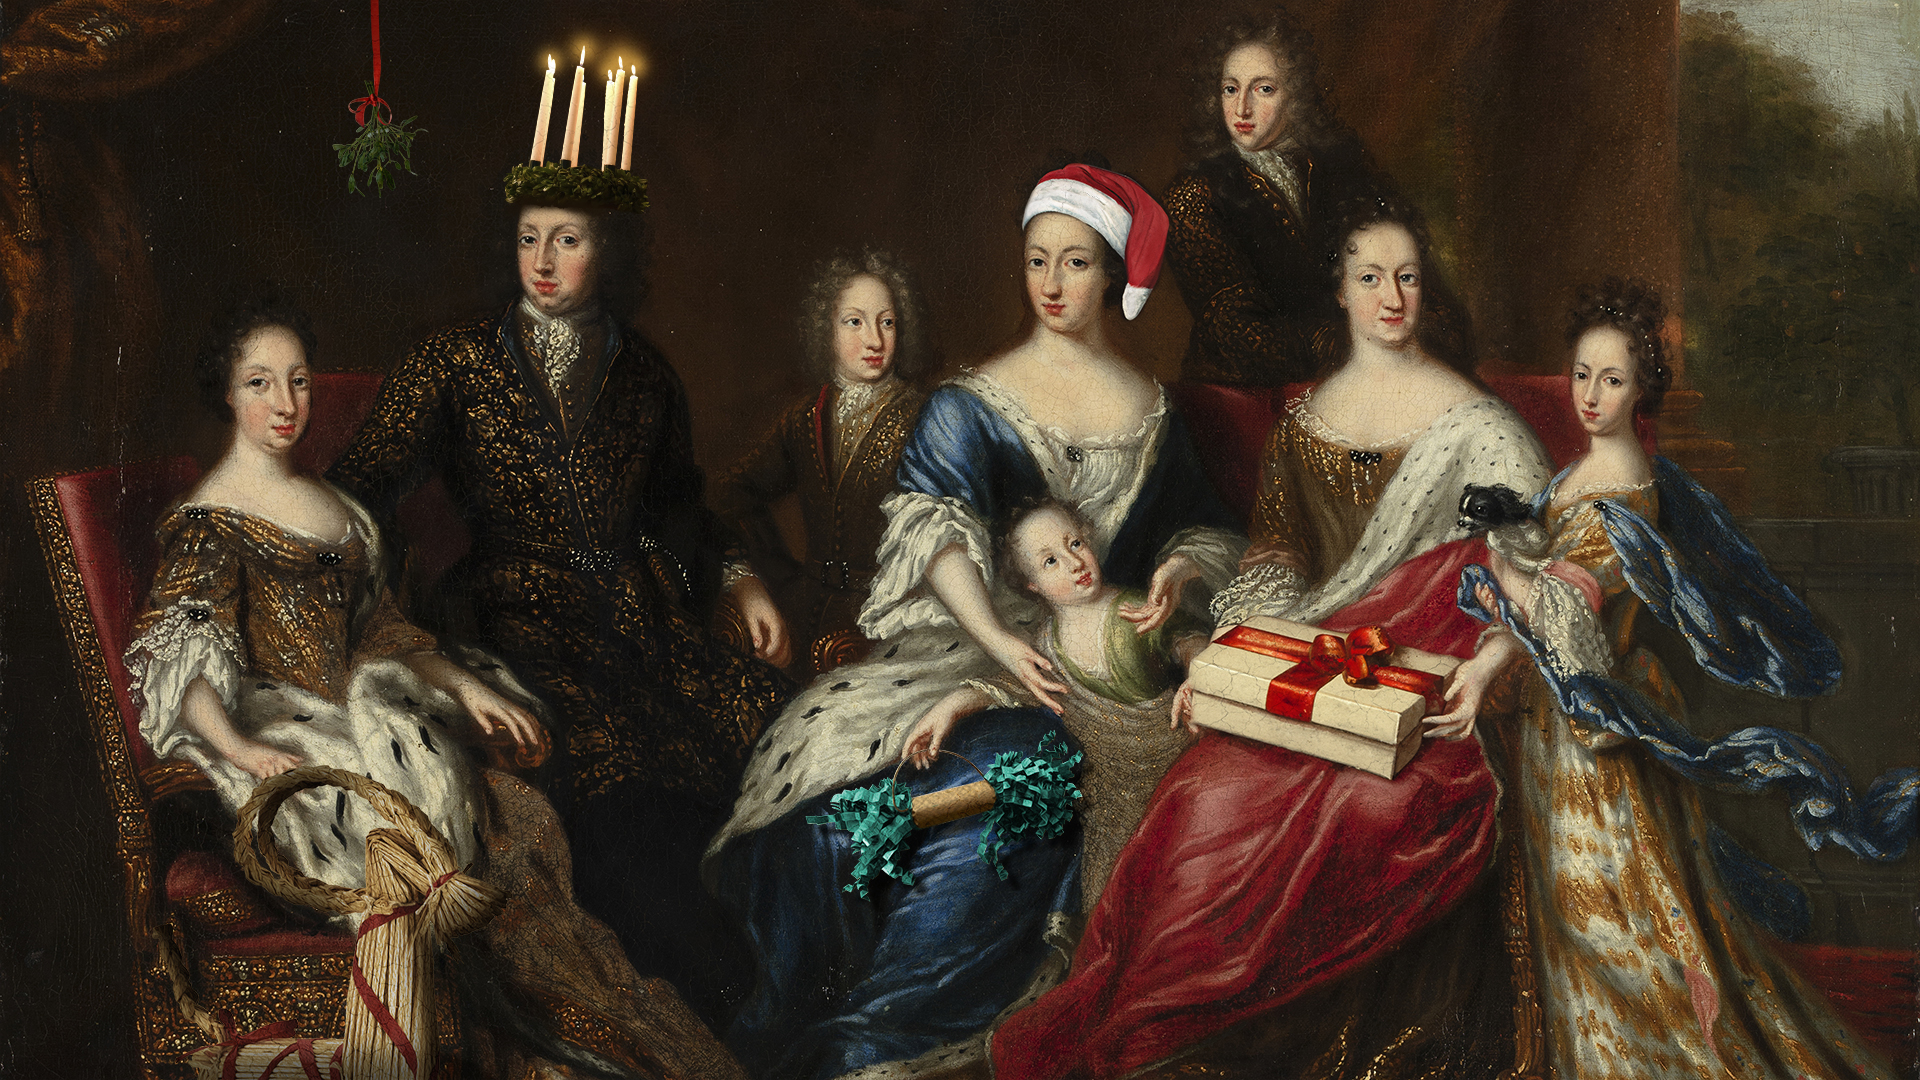 Montage på kung Karl XI med familj där juliga föremål lagts till i bilden. Som en luciakrona och tomteluva.